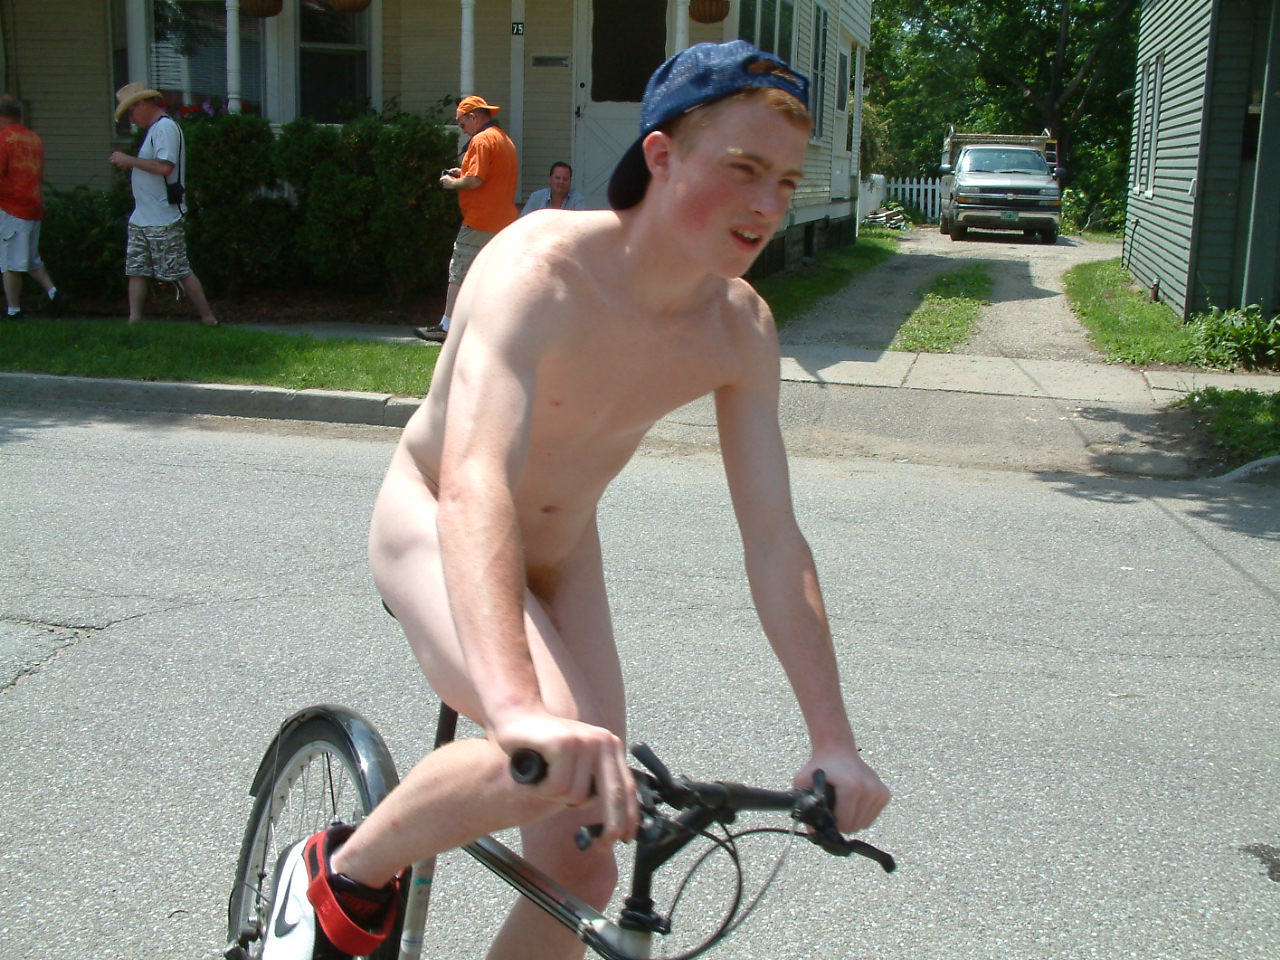 And lisa teenage boys naked on mountain bikes